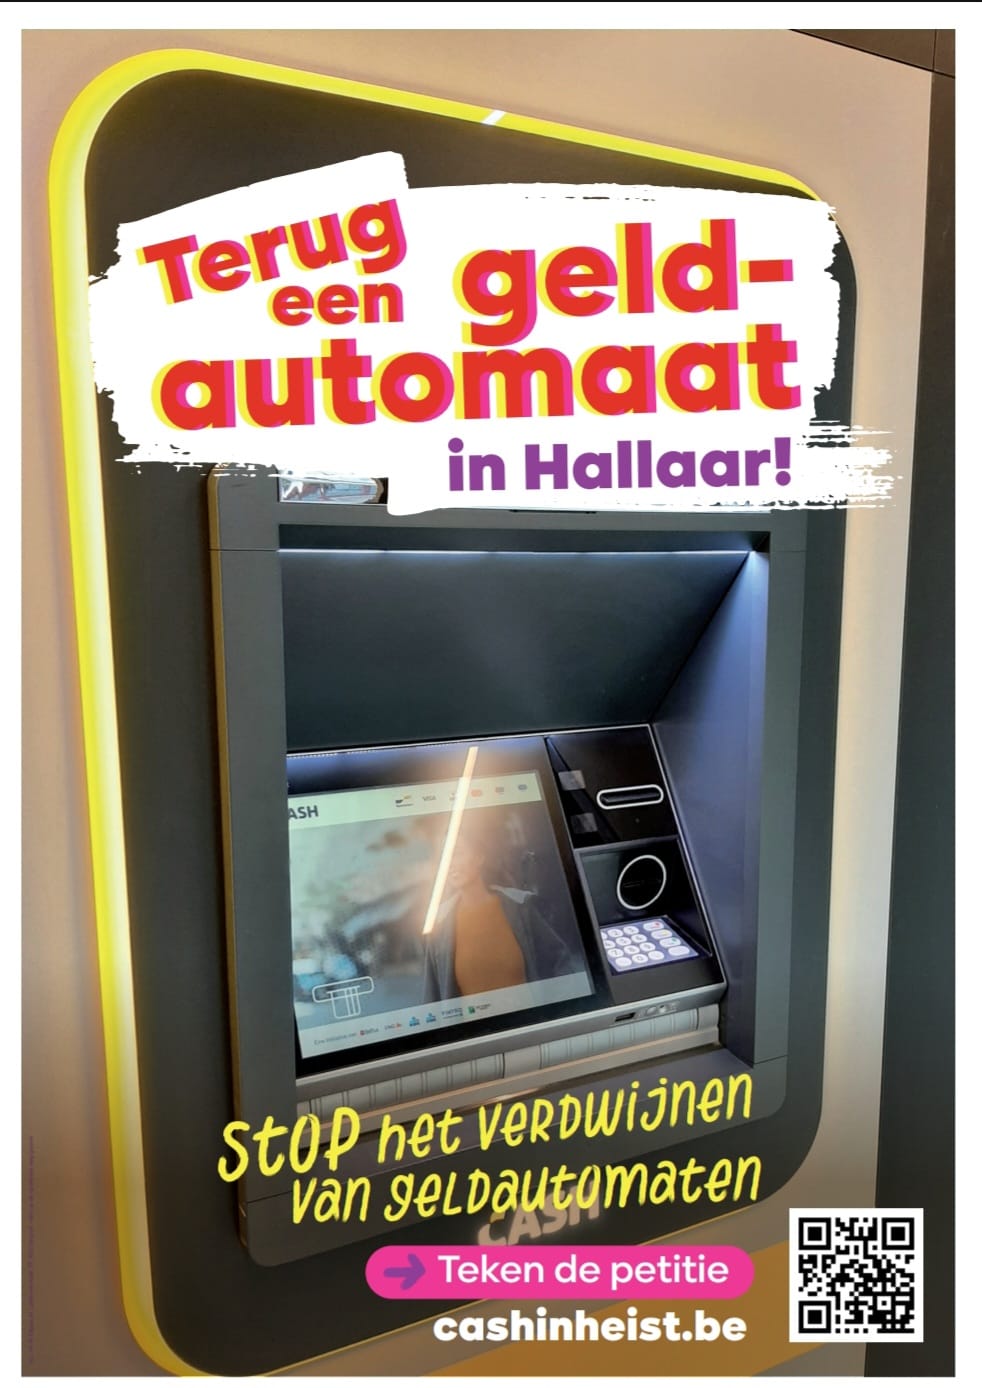 PVDA Heist-op-den-Berg start met actieplan tegen het verdwijnen van de Heistse geldautomaten.